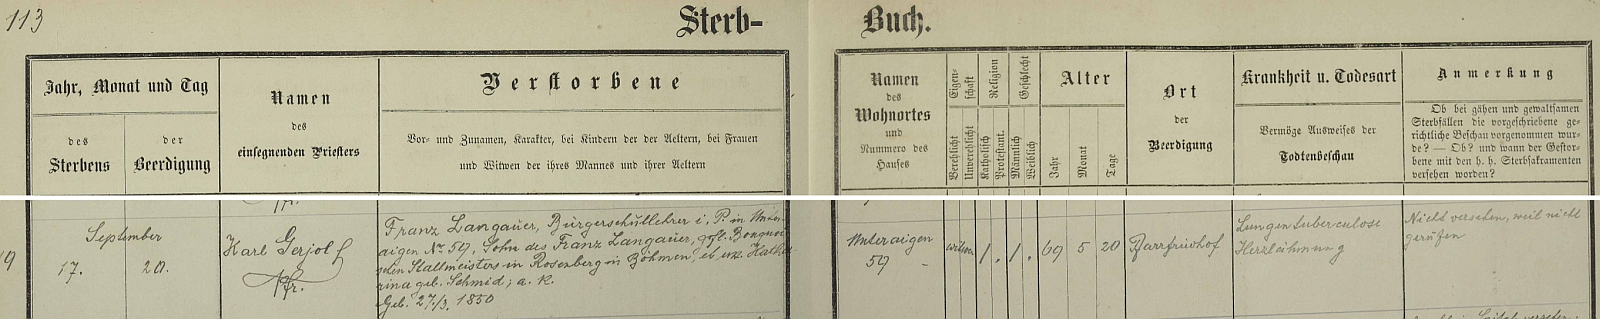 Záznam o jeho úmrtí v knize zemřelých dolnorakouské farní obce Langenlebarn